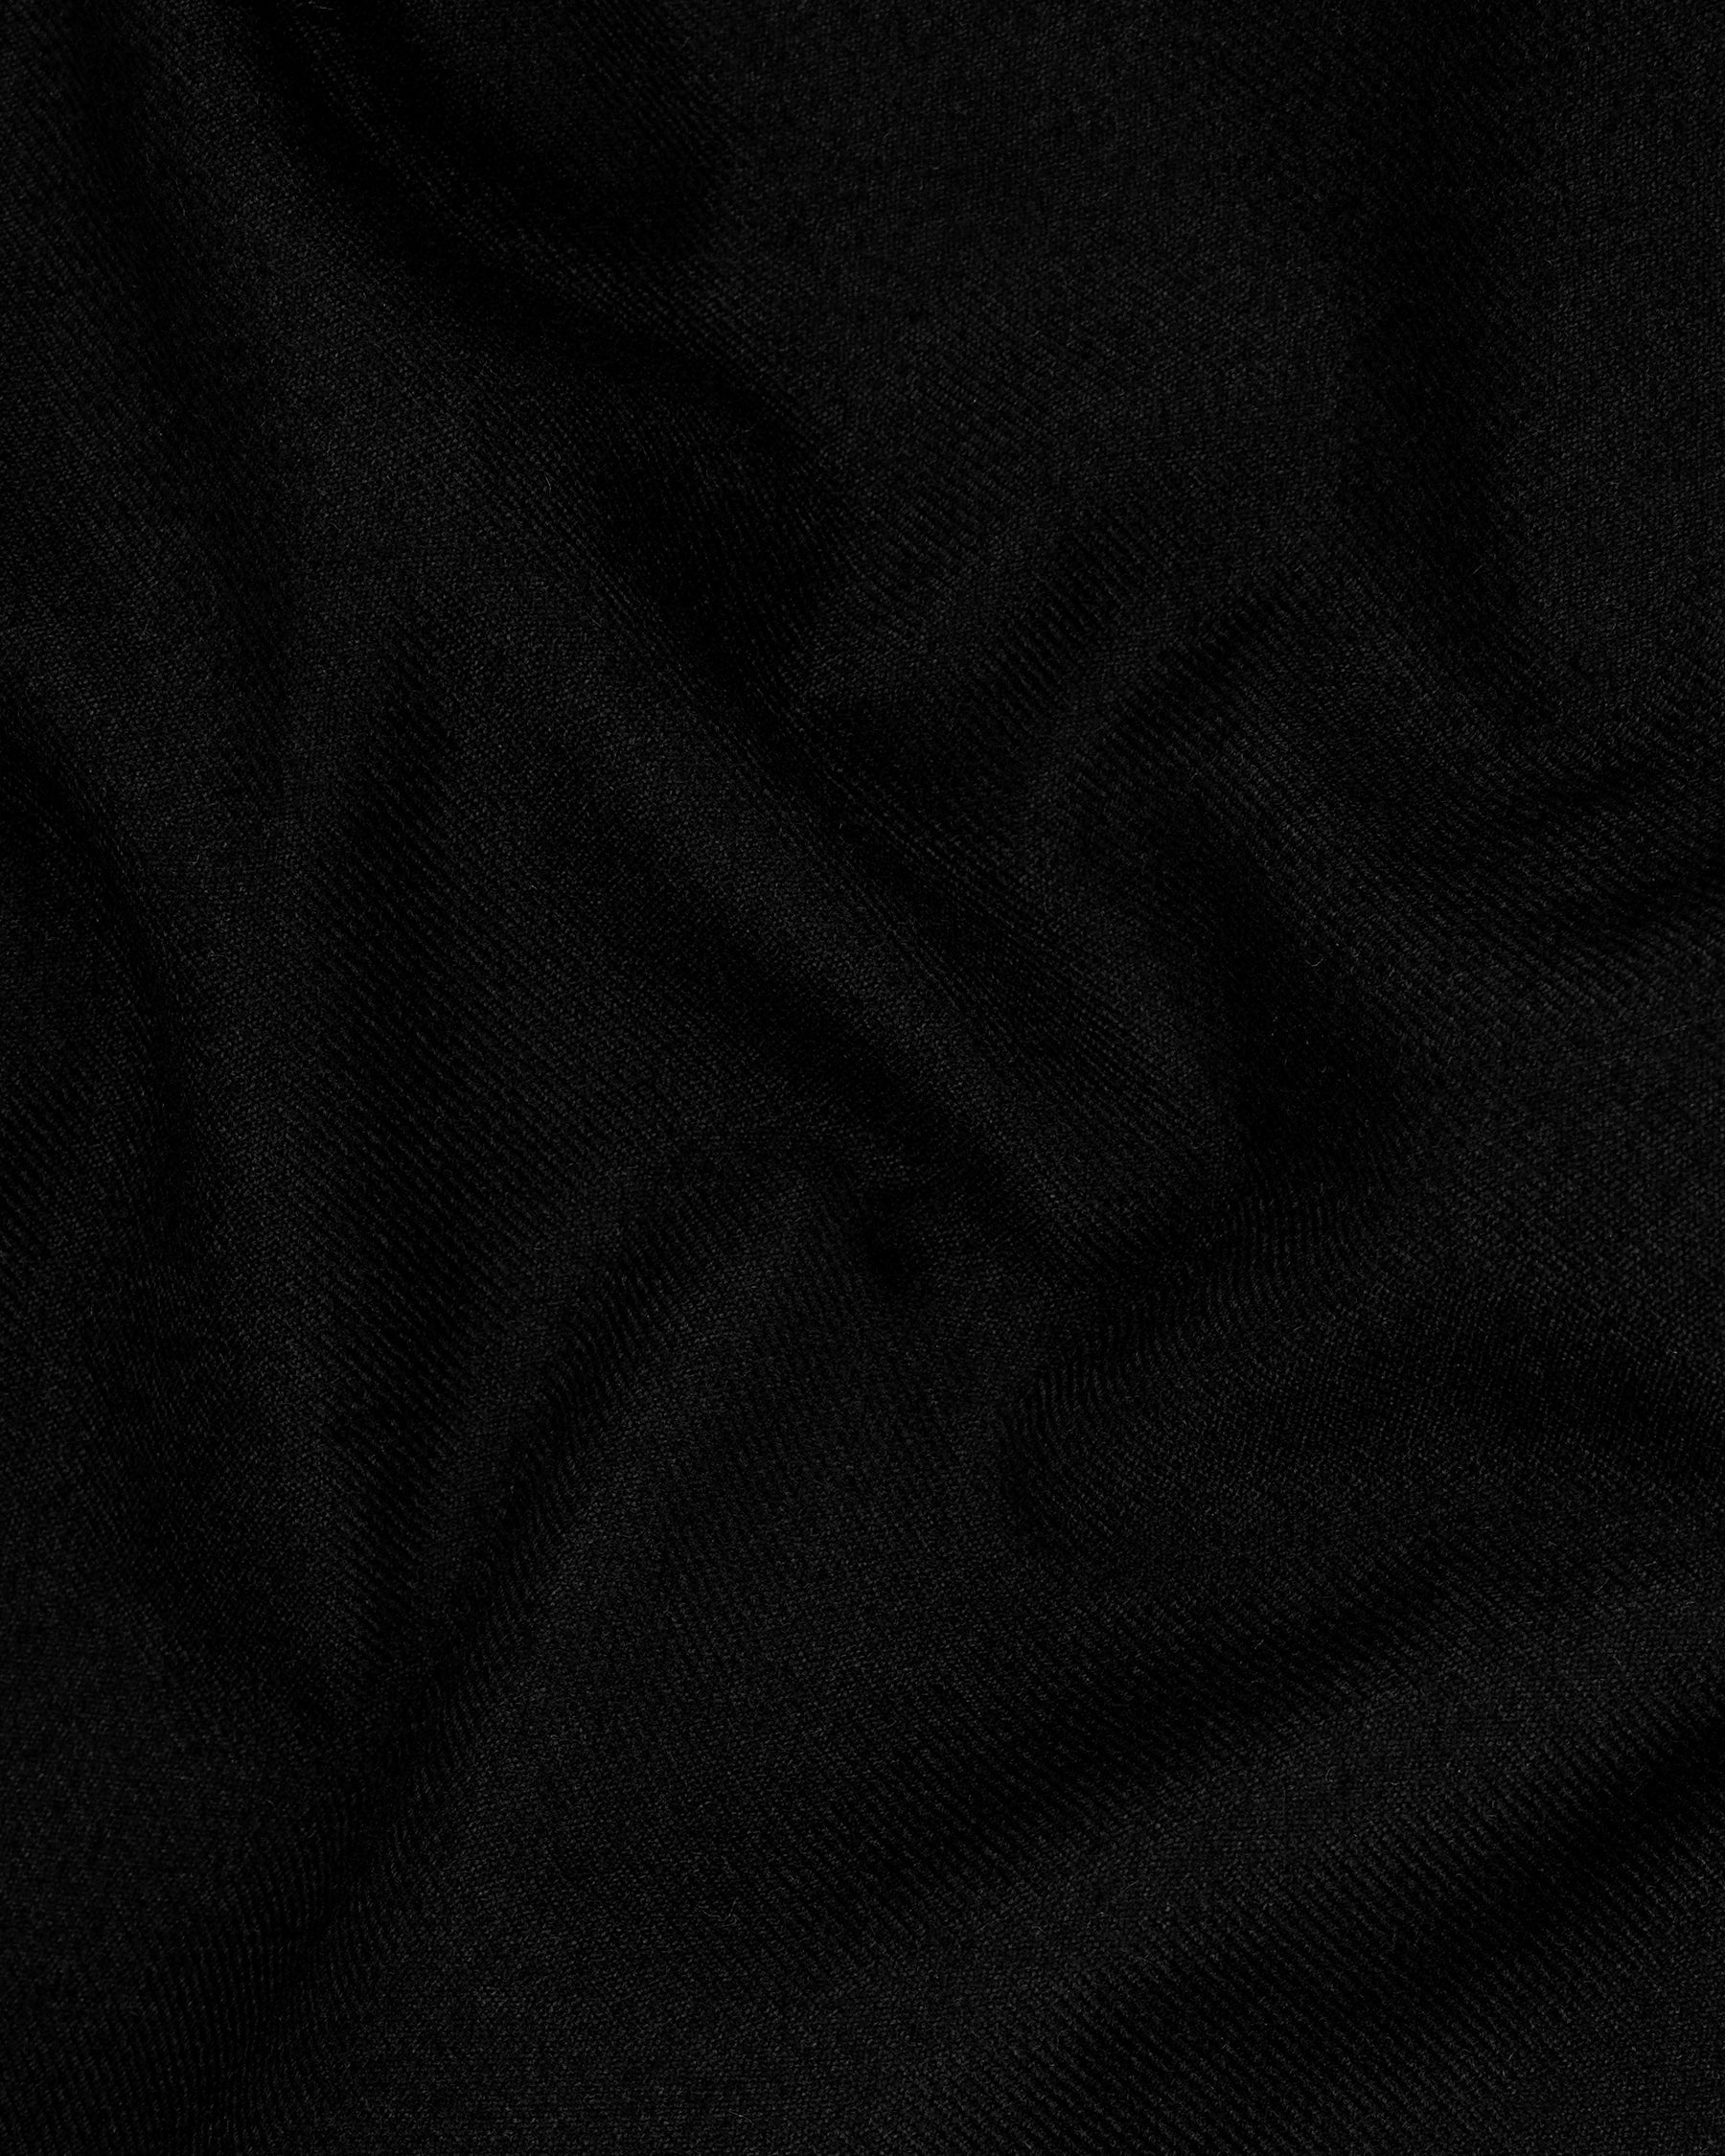 Jade Black Wool Rich Waistcoat V2131-36, V2131-38, V2131-40, V2131-42, V2131-44, V2131-46, V2131-48, V2131-50, V2131-52, V2131-54, V2131-56, V2131-58, V2131-60